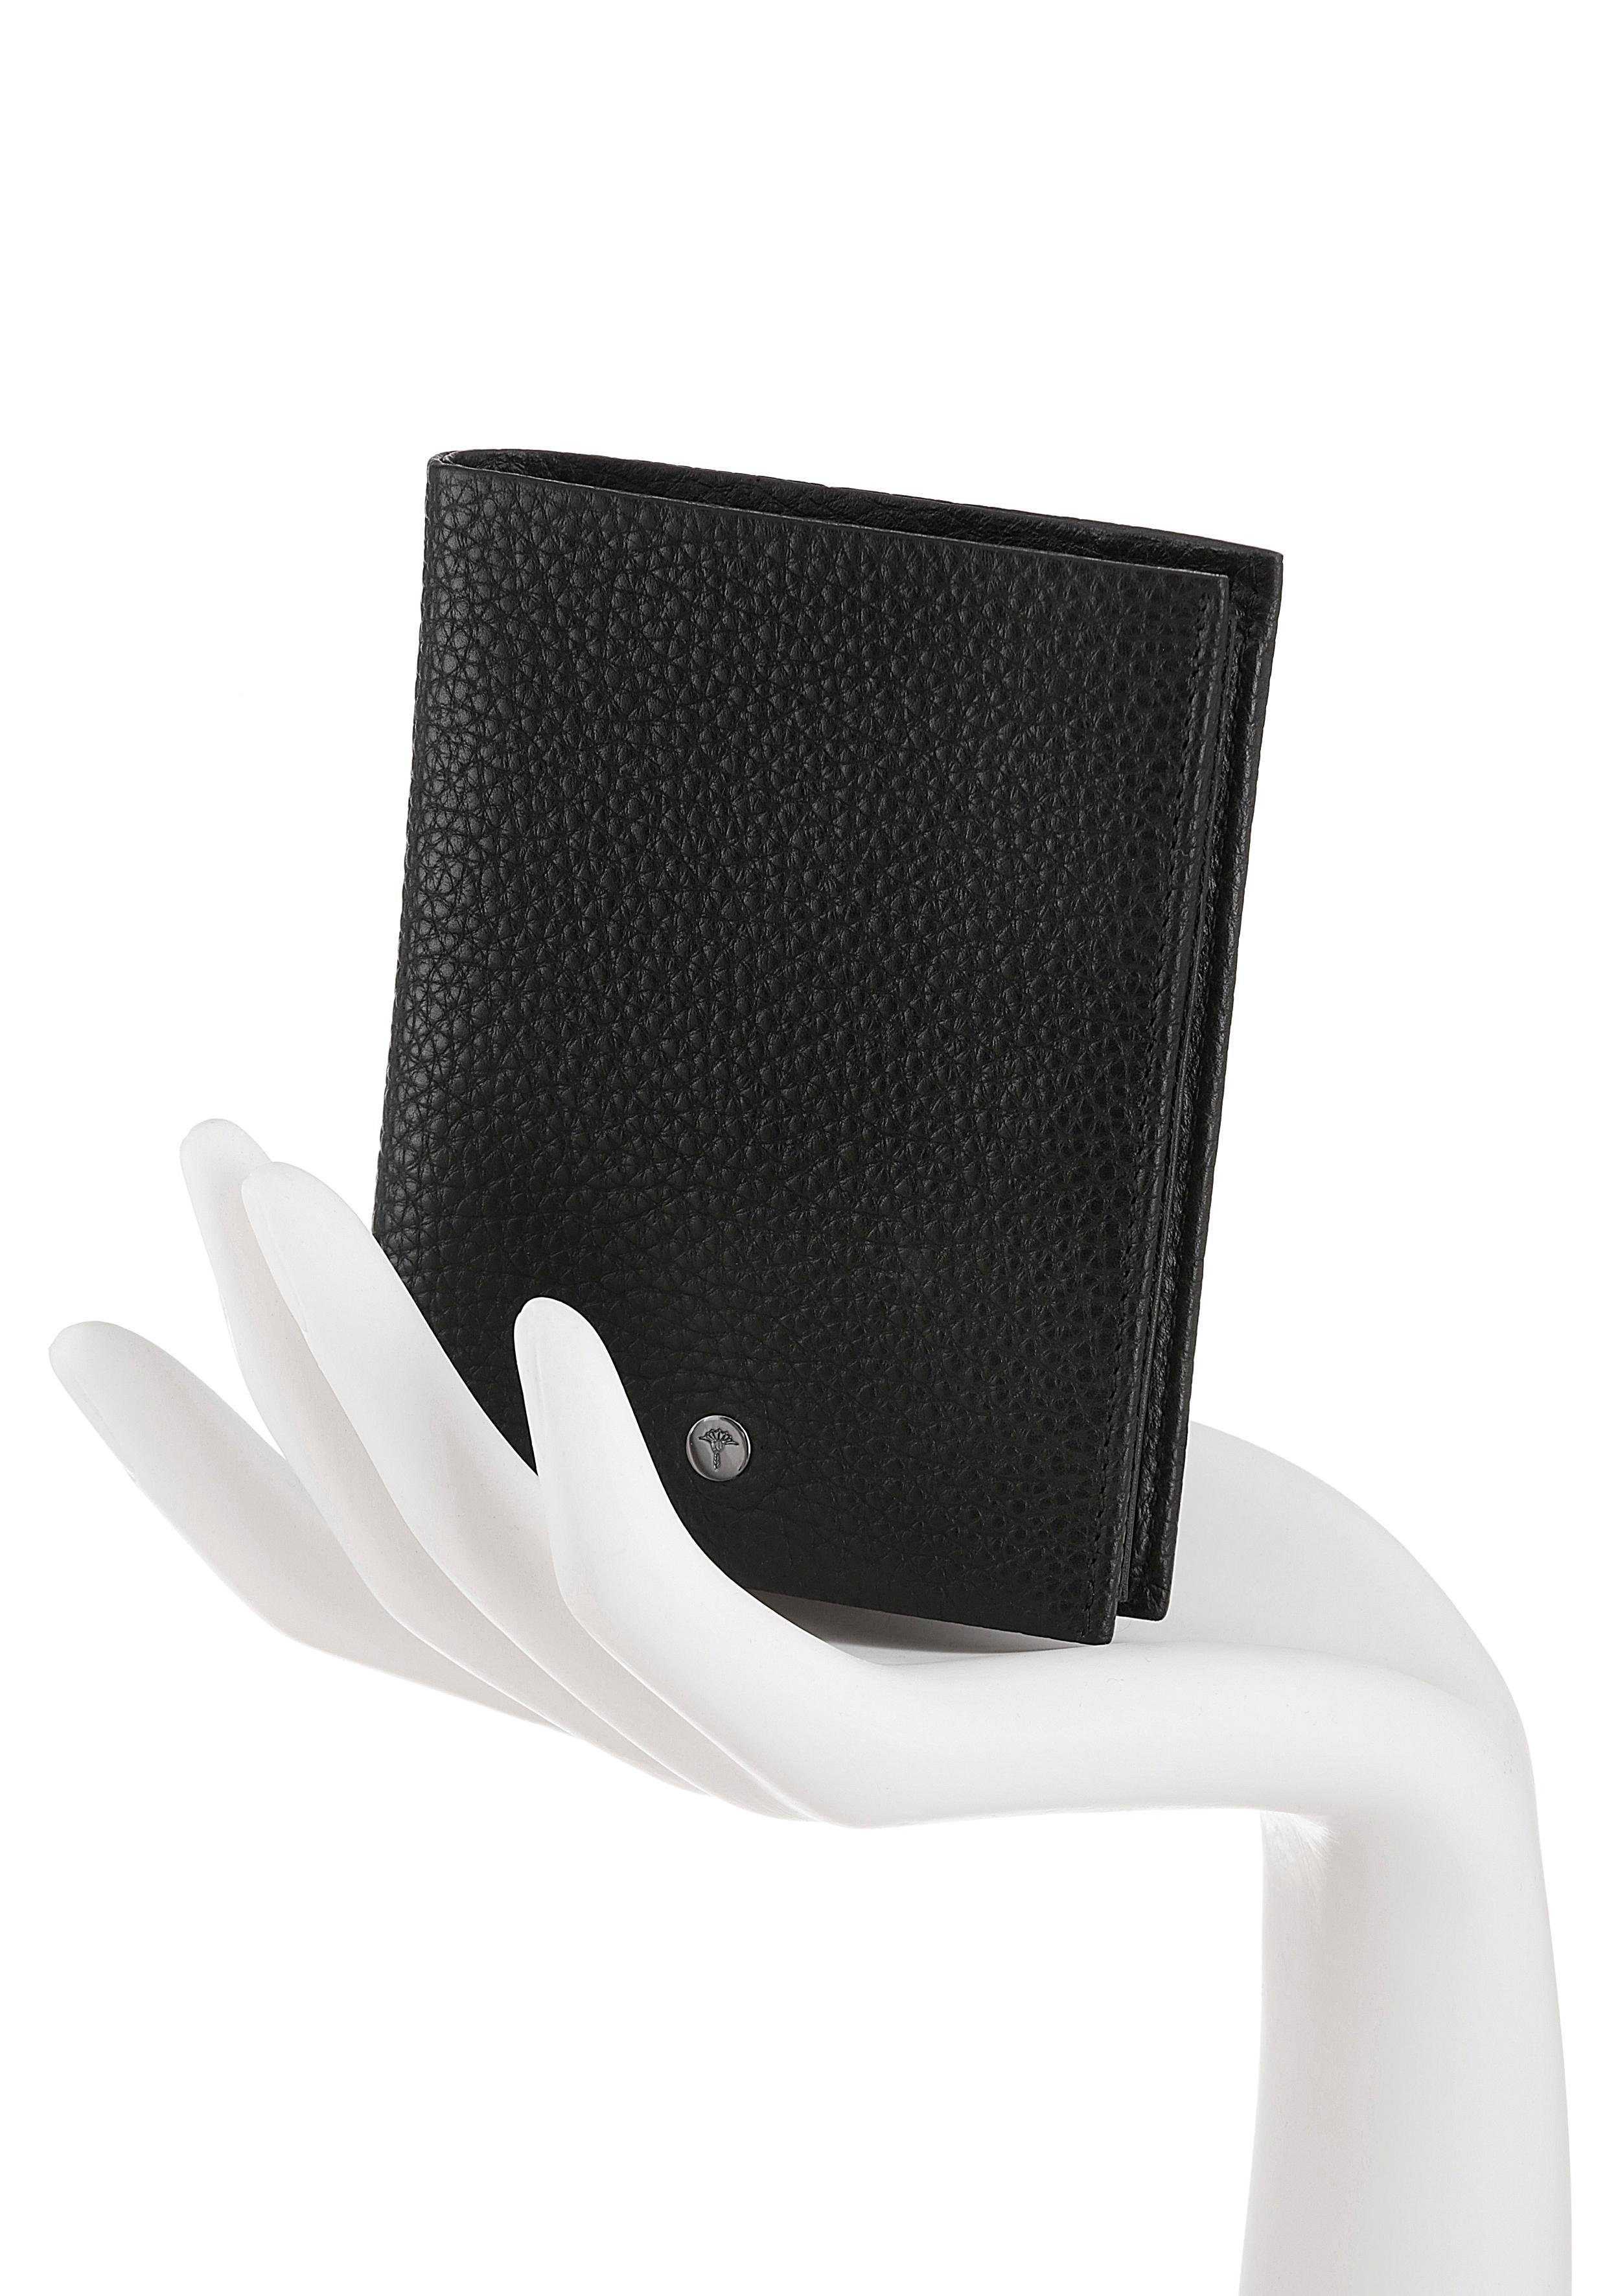 Joop! Geldbörse Cardona im Design hochwertigem aus V8, Leder zeitlosen Ladon schwarz BillFold